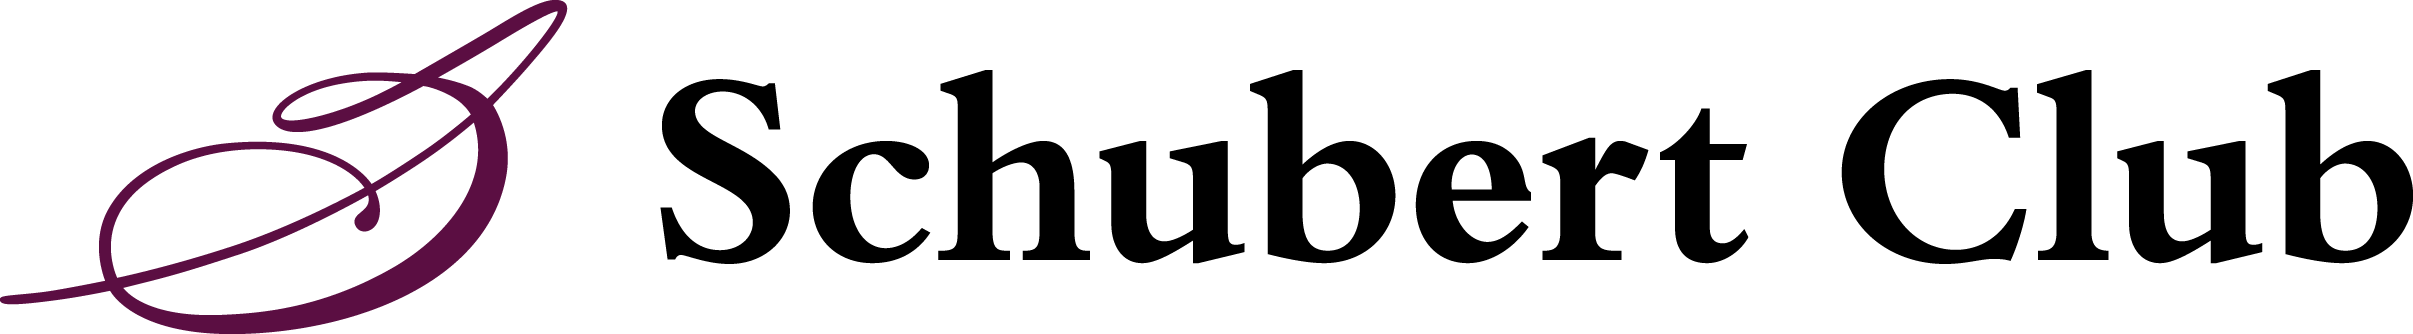 Schubert logo